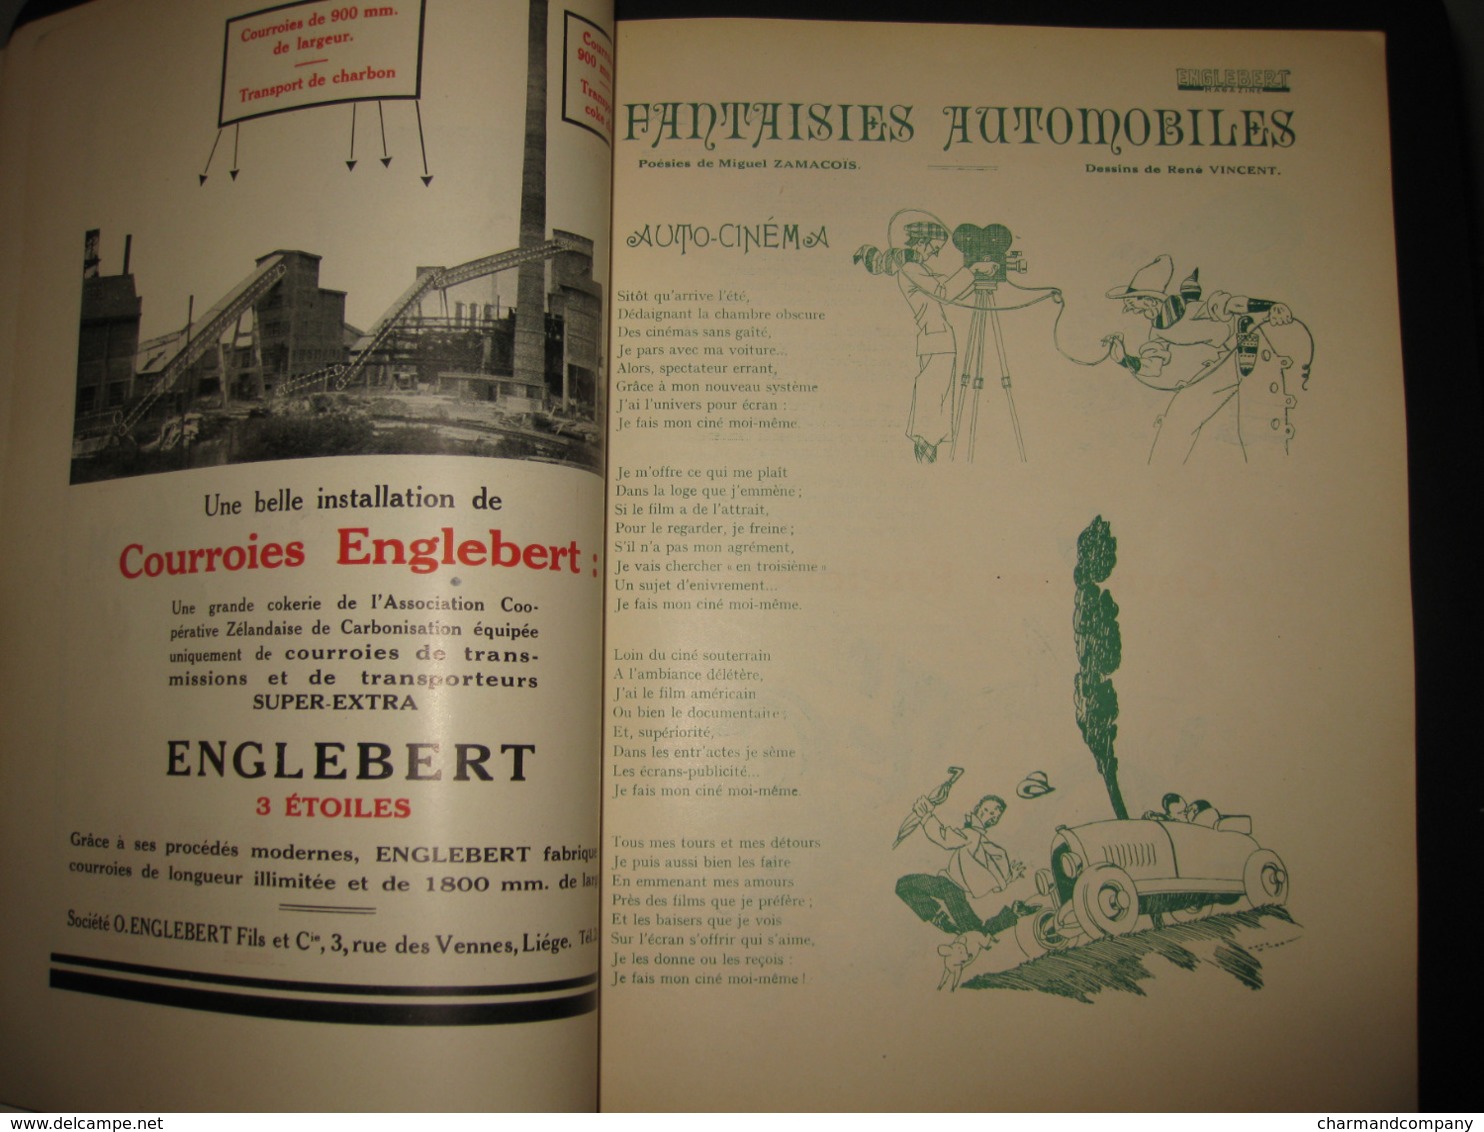 ENGLEBERT MAGAZINE 10e anniversaire 1920-1930 photos, publicités, illustr. de J. OCHS, René VINCENT.. 232 pages